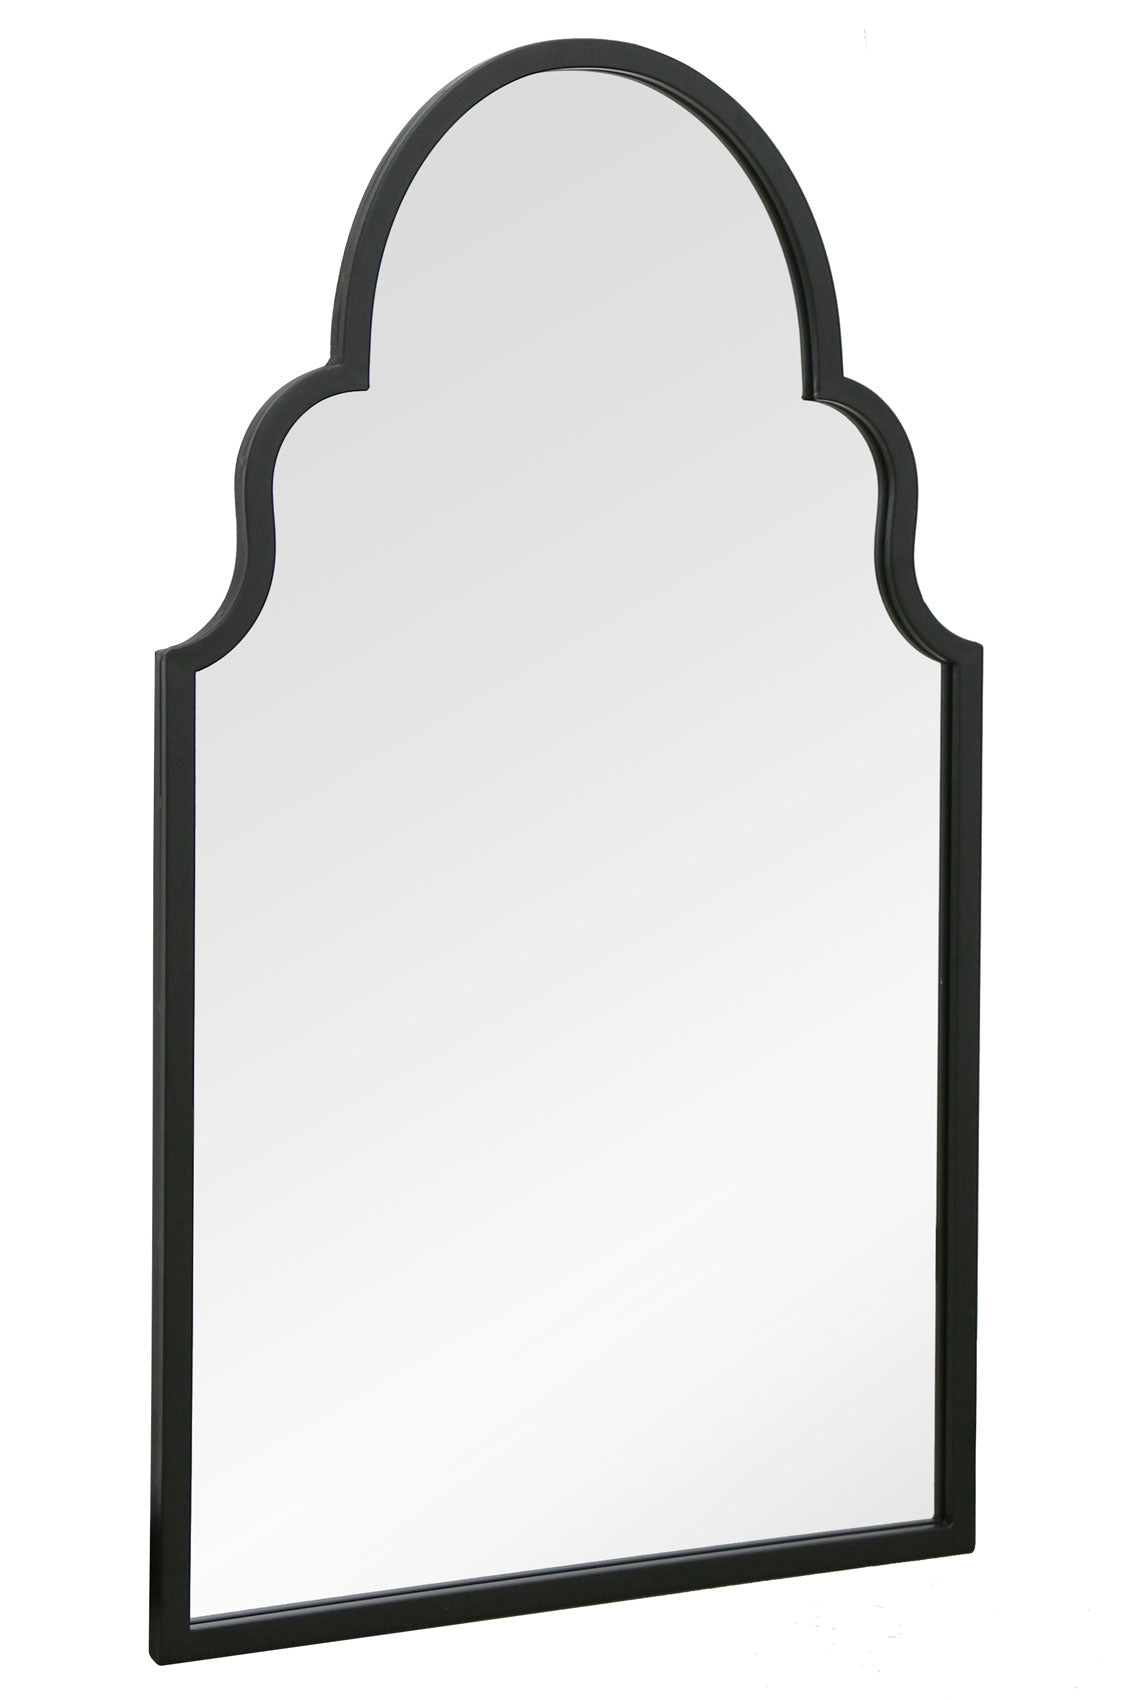 Arch Style Garden Mirror (Black Frame)